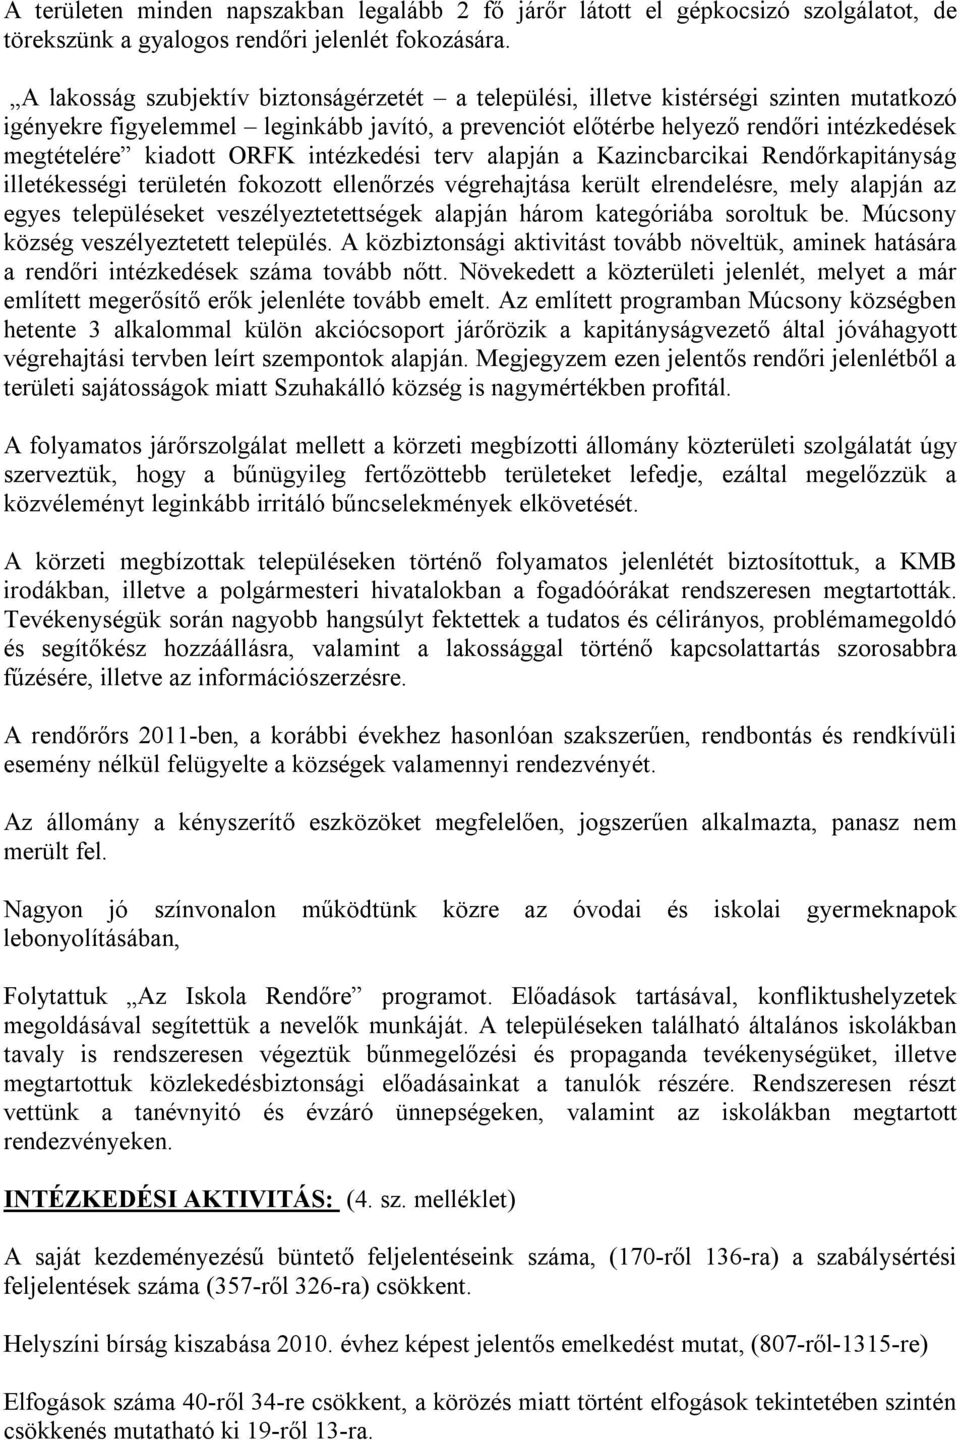 kiadott ORFK intézkedési terv alapján a Kazincbarcikai Rendőrkapitányság illetékességi területén fokozott ellenőrzés végrehajtása került elrendelésre, mely alapján az egyes településeket